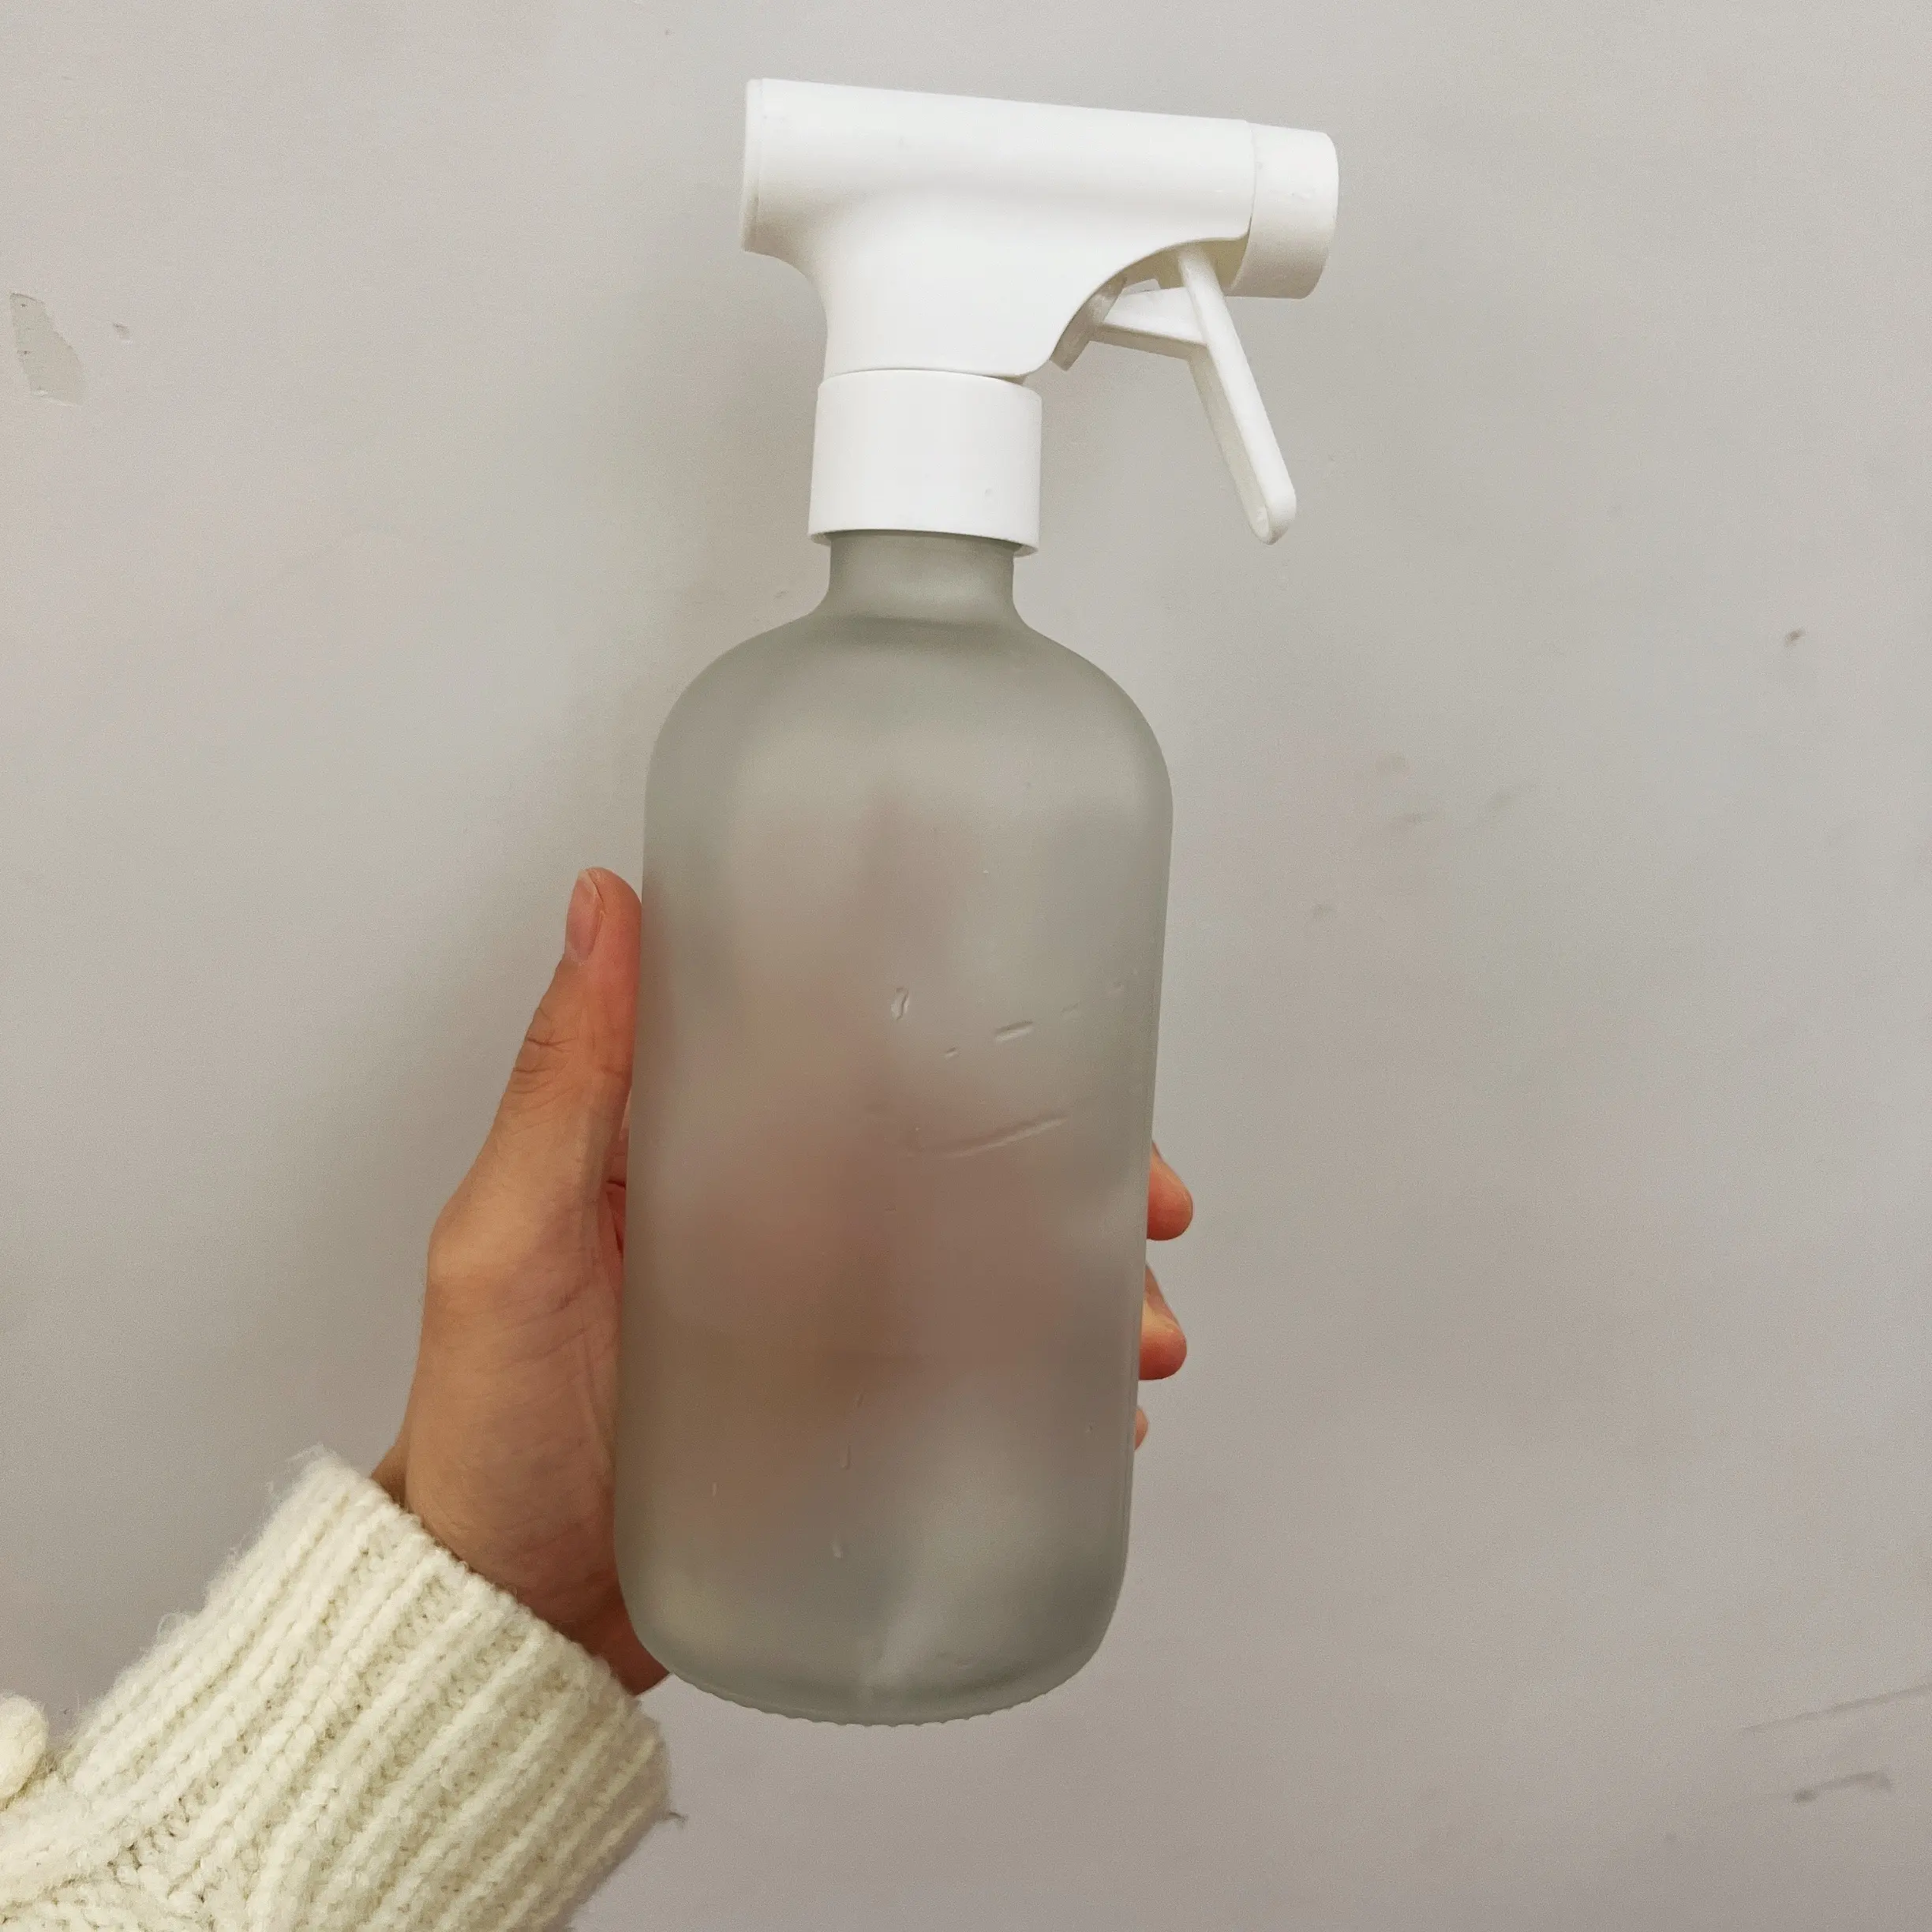 Manicotto in Silicone 8oz16oz bottiglia di vetro Spray trasparente ambra smerigliata rotonda vuota con spruzzatore a grilletto per soluzione detergente